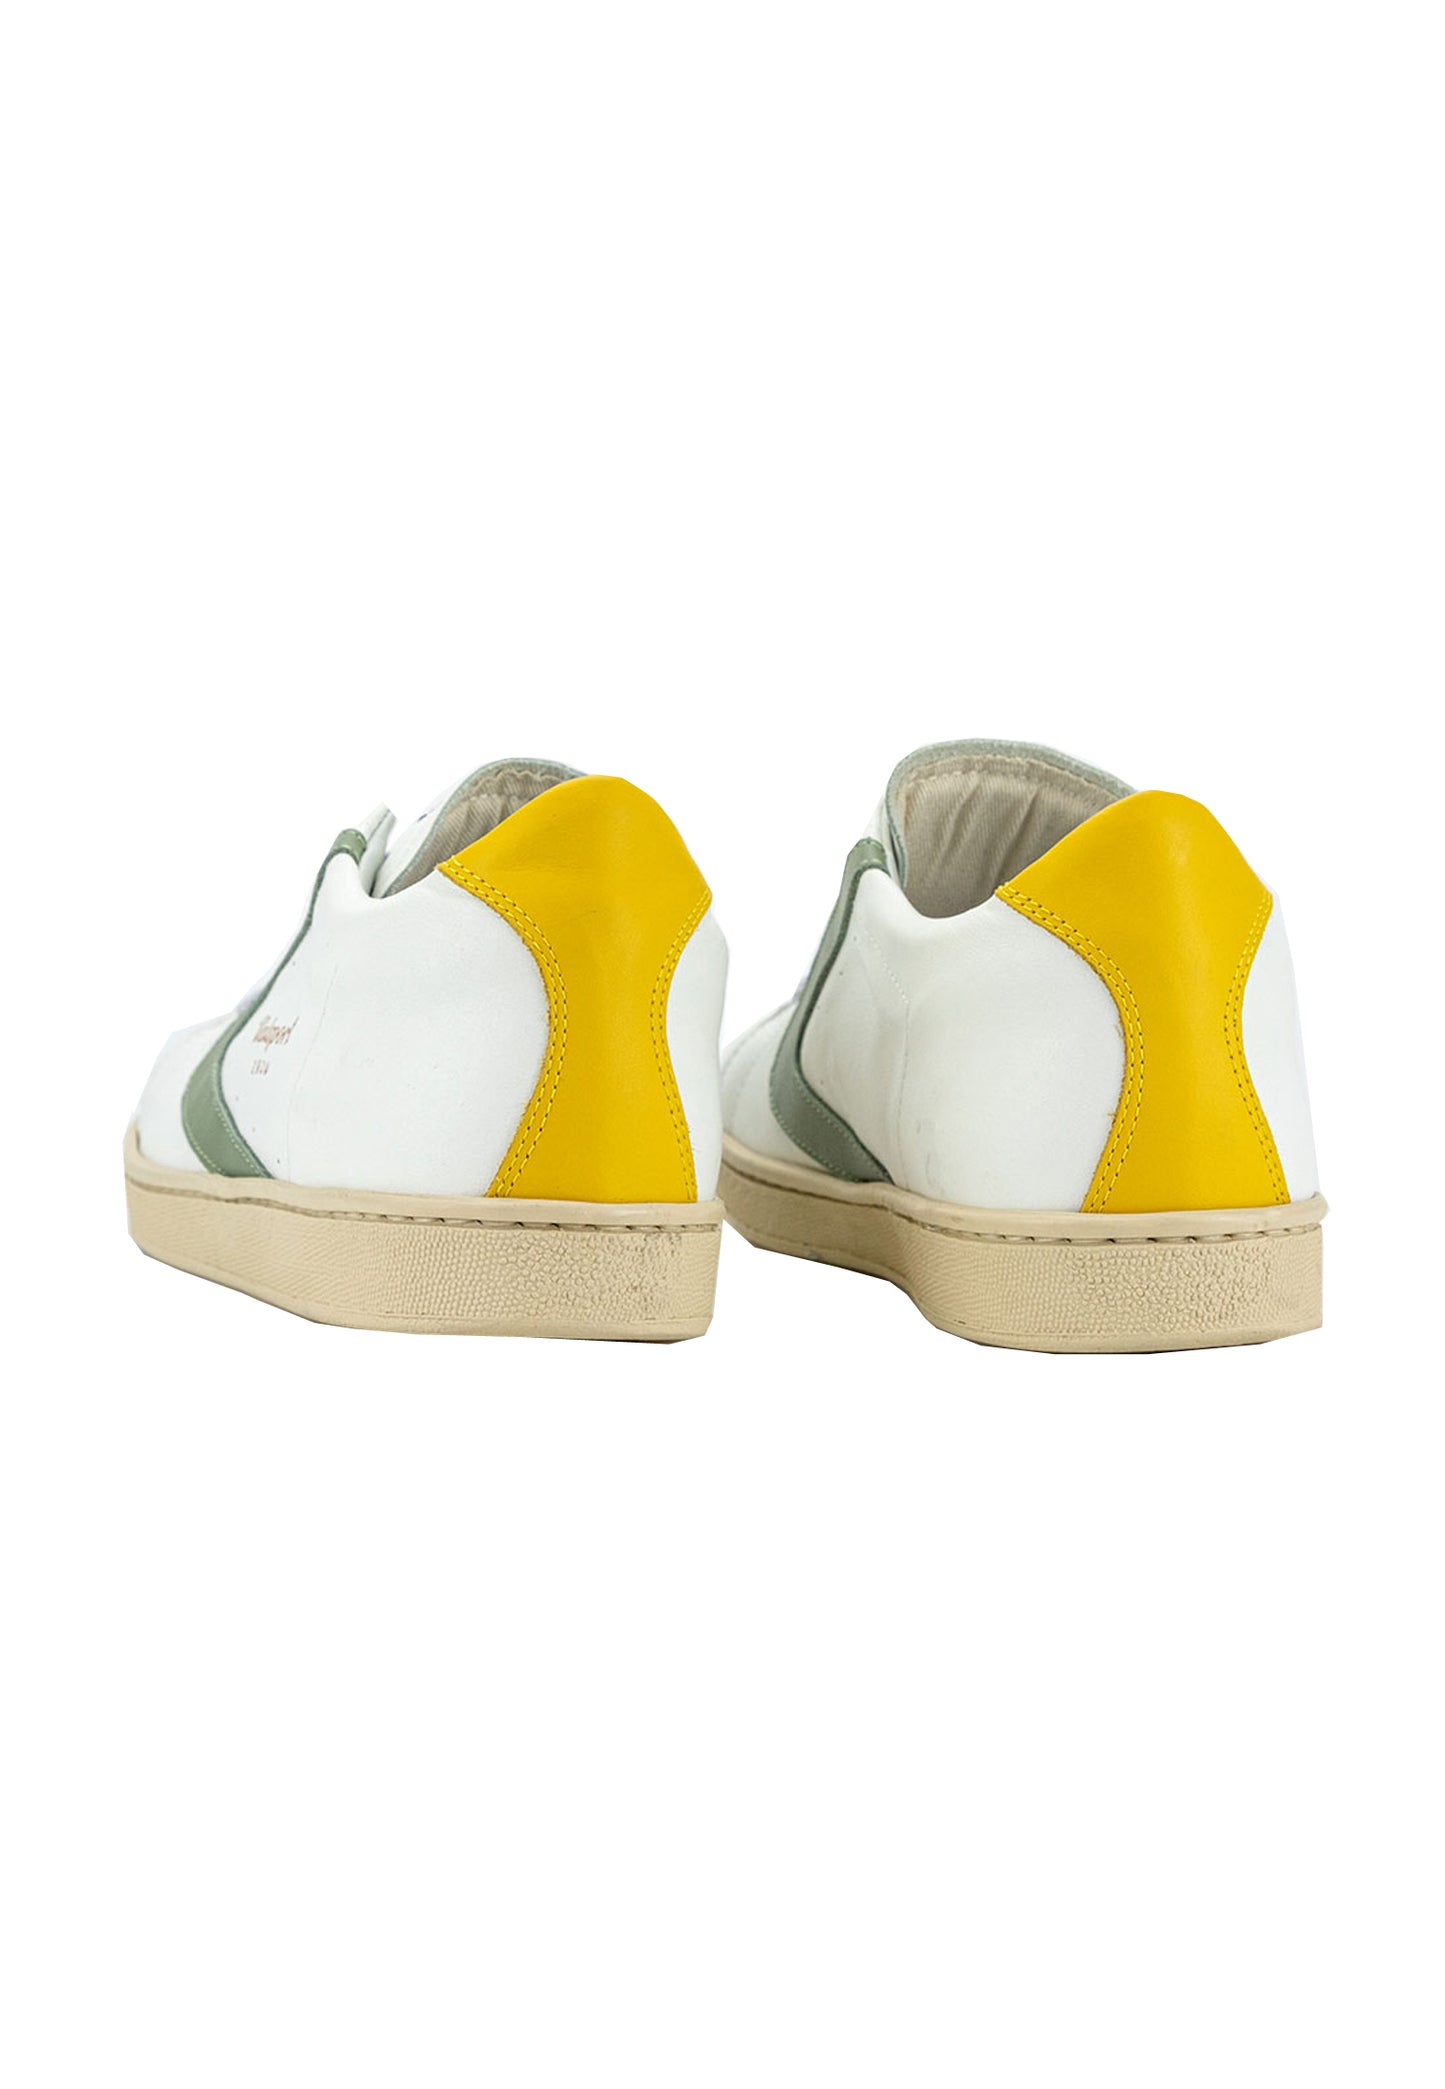 Scarpe Sneaker bianco salvia giallo Tournament Mix Valsport P24